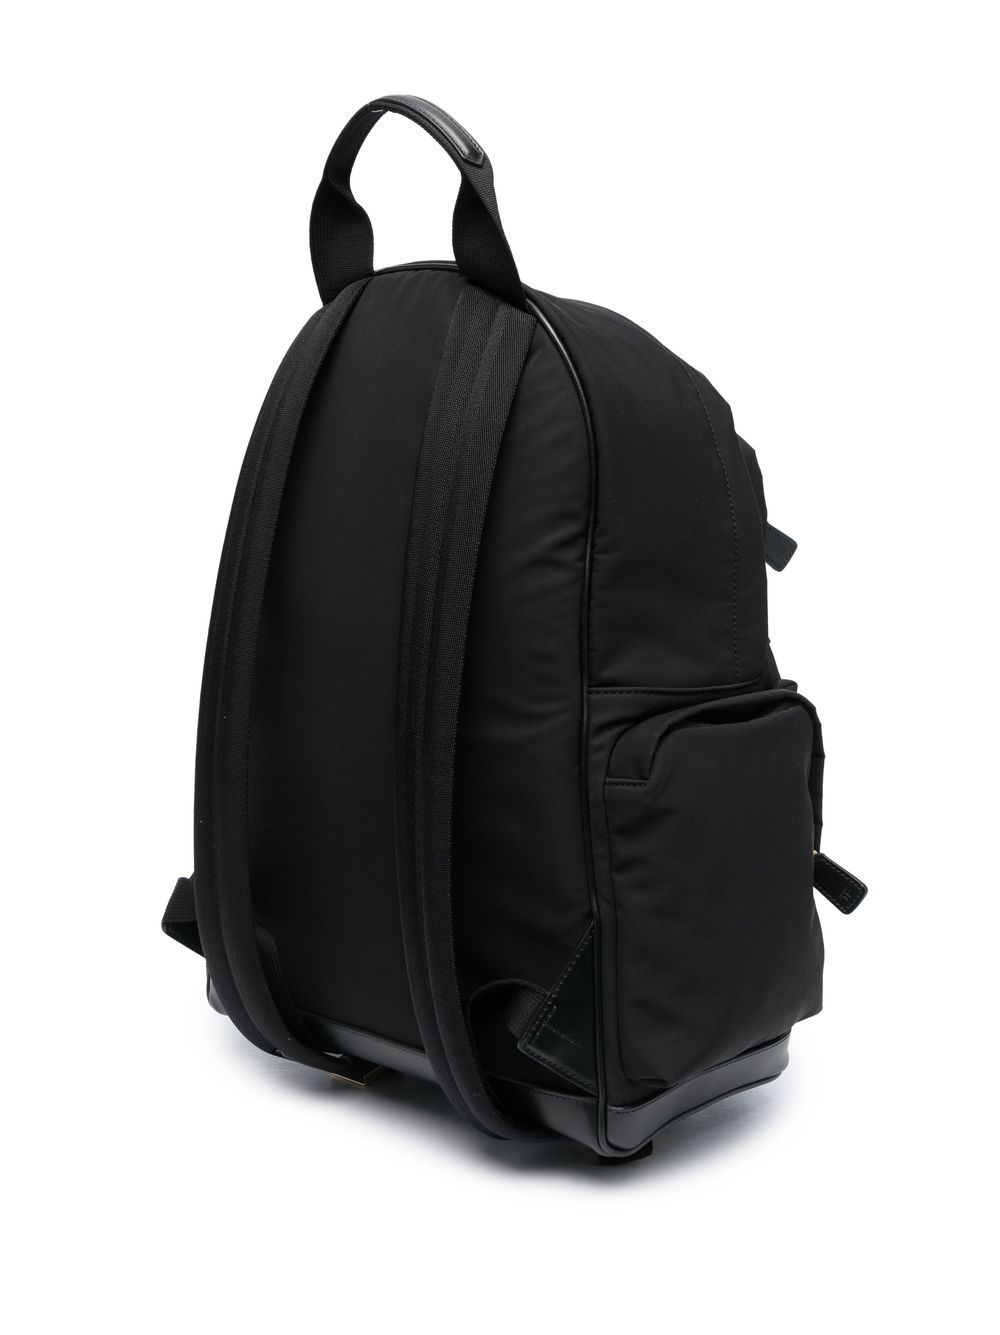 Túi lưng da hiện đại dành cho nam giới - Thiết kế thời thượng với logo đẹp mắt